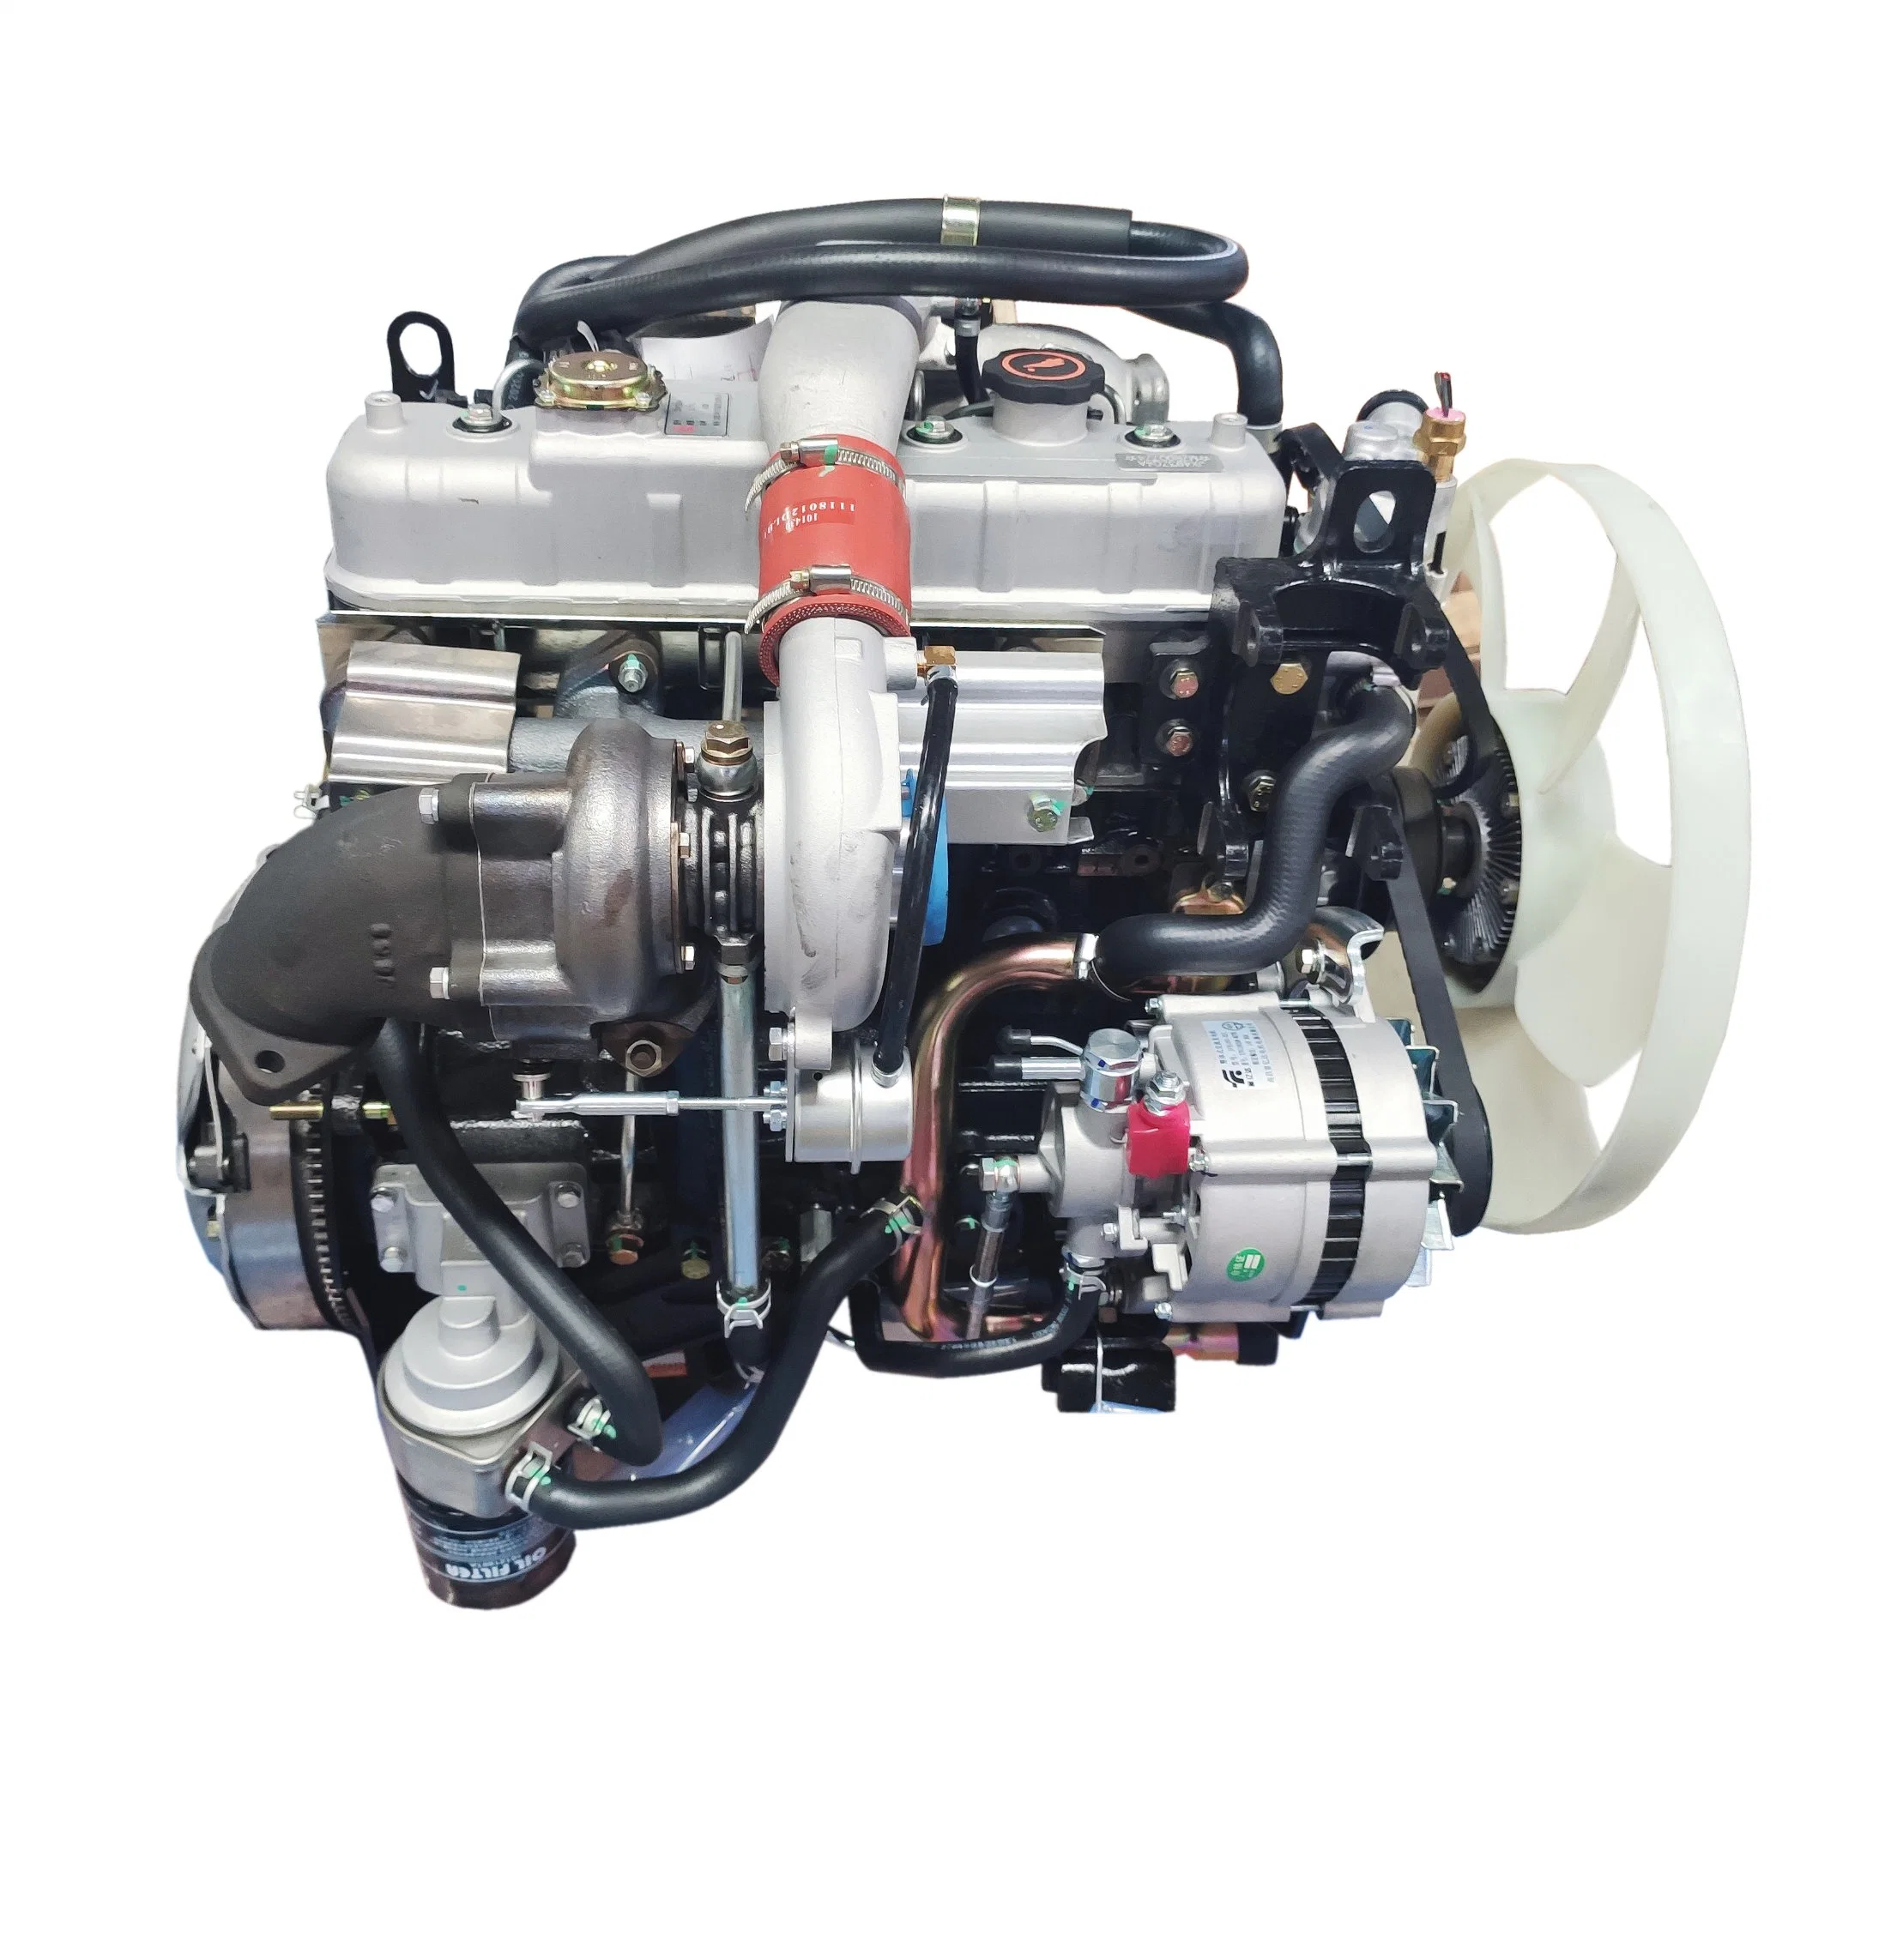 Diesel Engine/Truck Engine /Water Cooling Engine4 Cylinder 68kw 4jb1 /4jb1t for Truck SUV Mairne Diesel Engine Boat Motor Engine for Ship